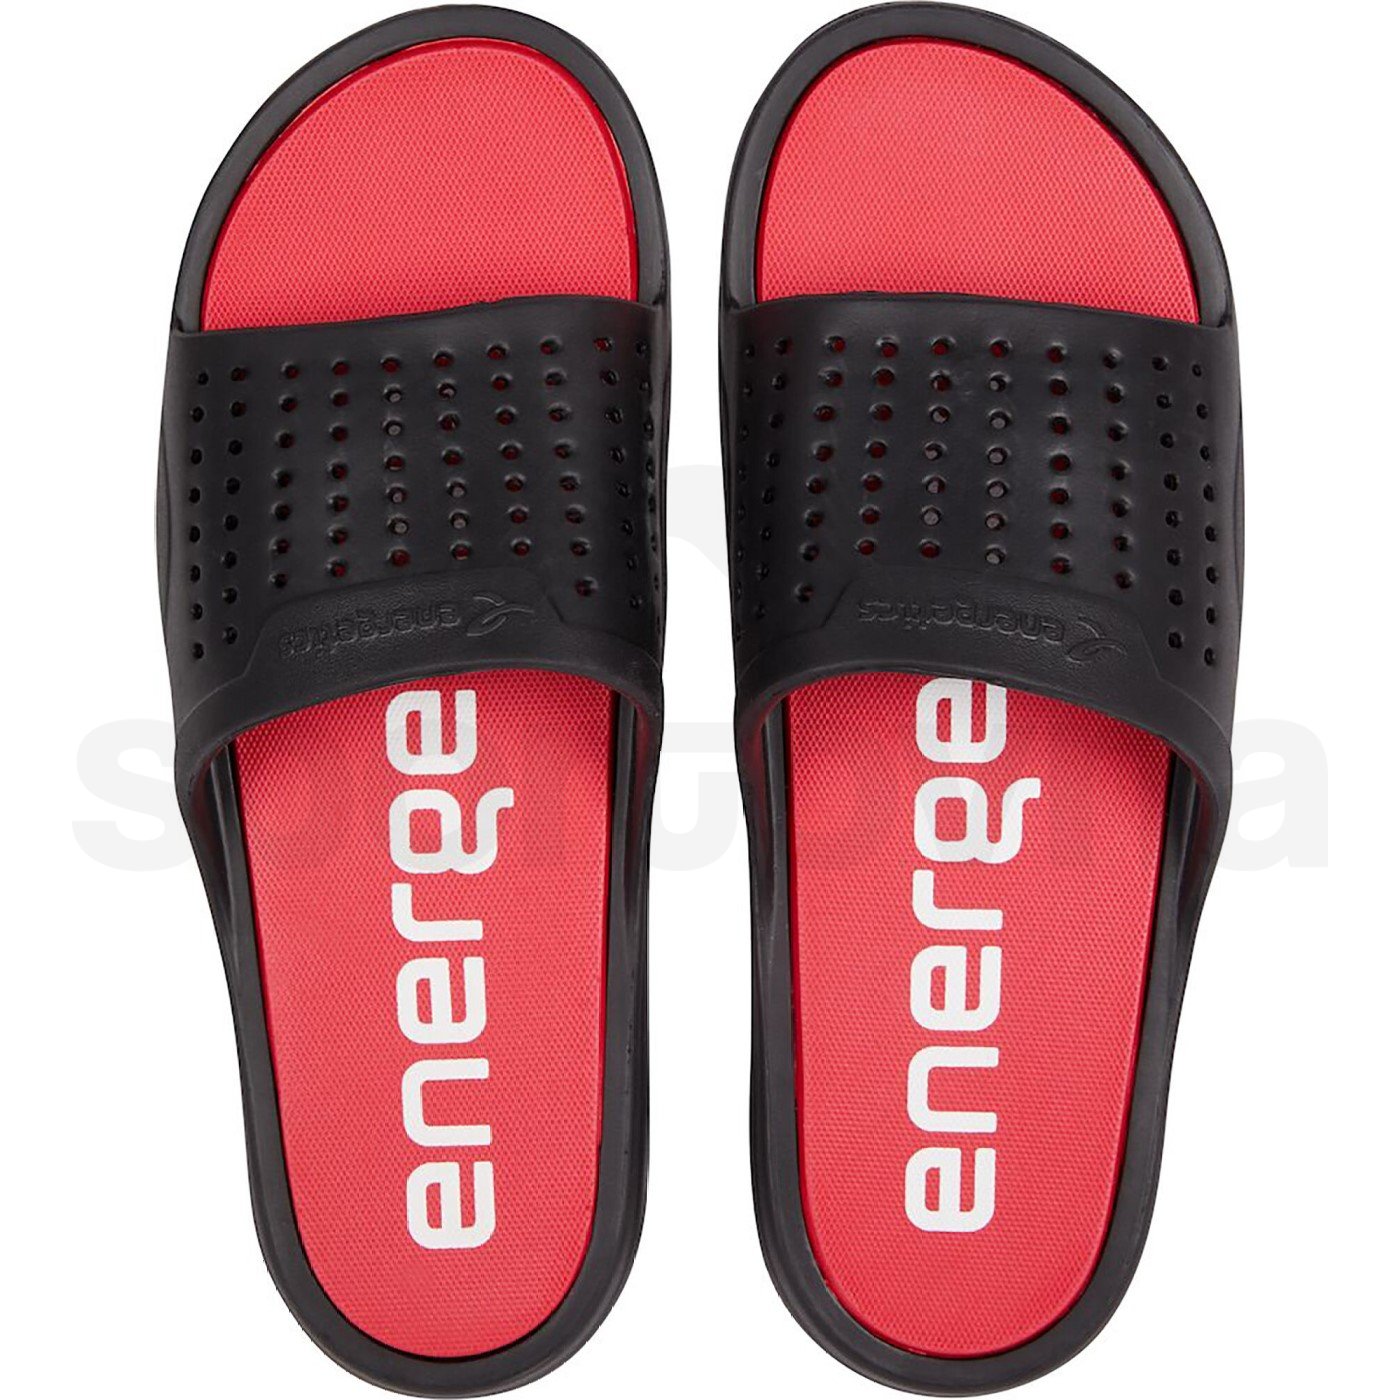 Pantofle Energetics Pampel - černá/červená